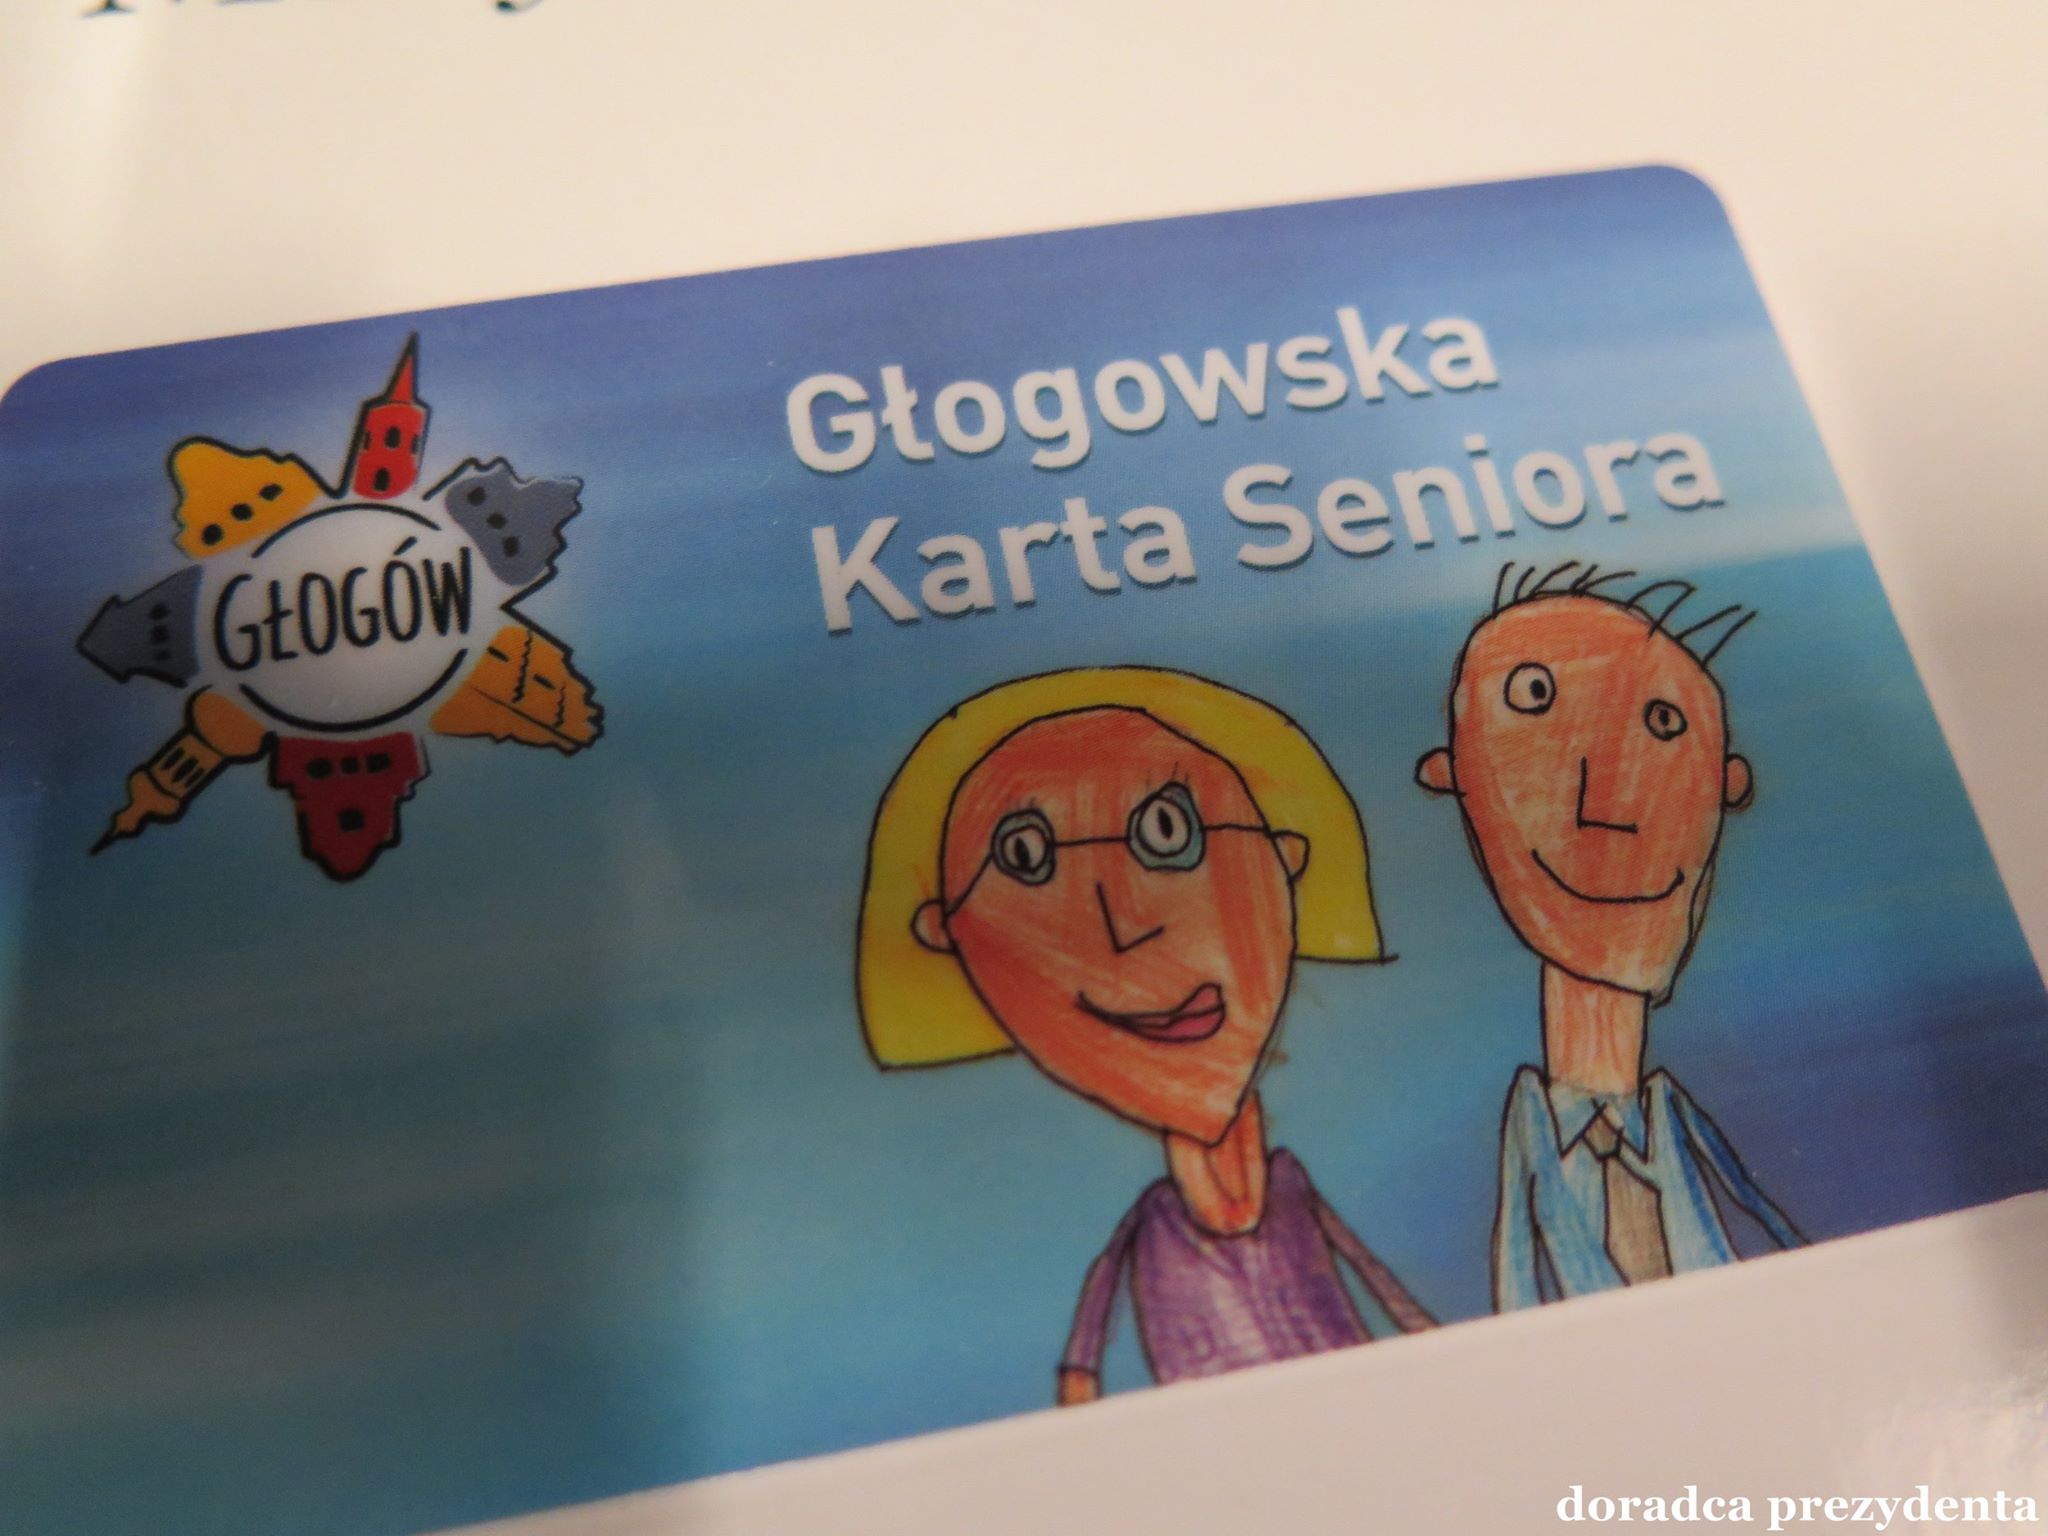 Inauguracja Głogowskiej Karty Seniora - 18 września - zdjęcie 1